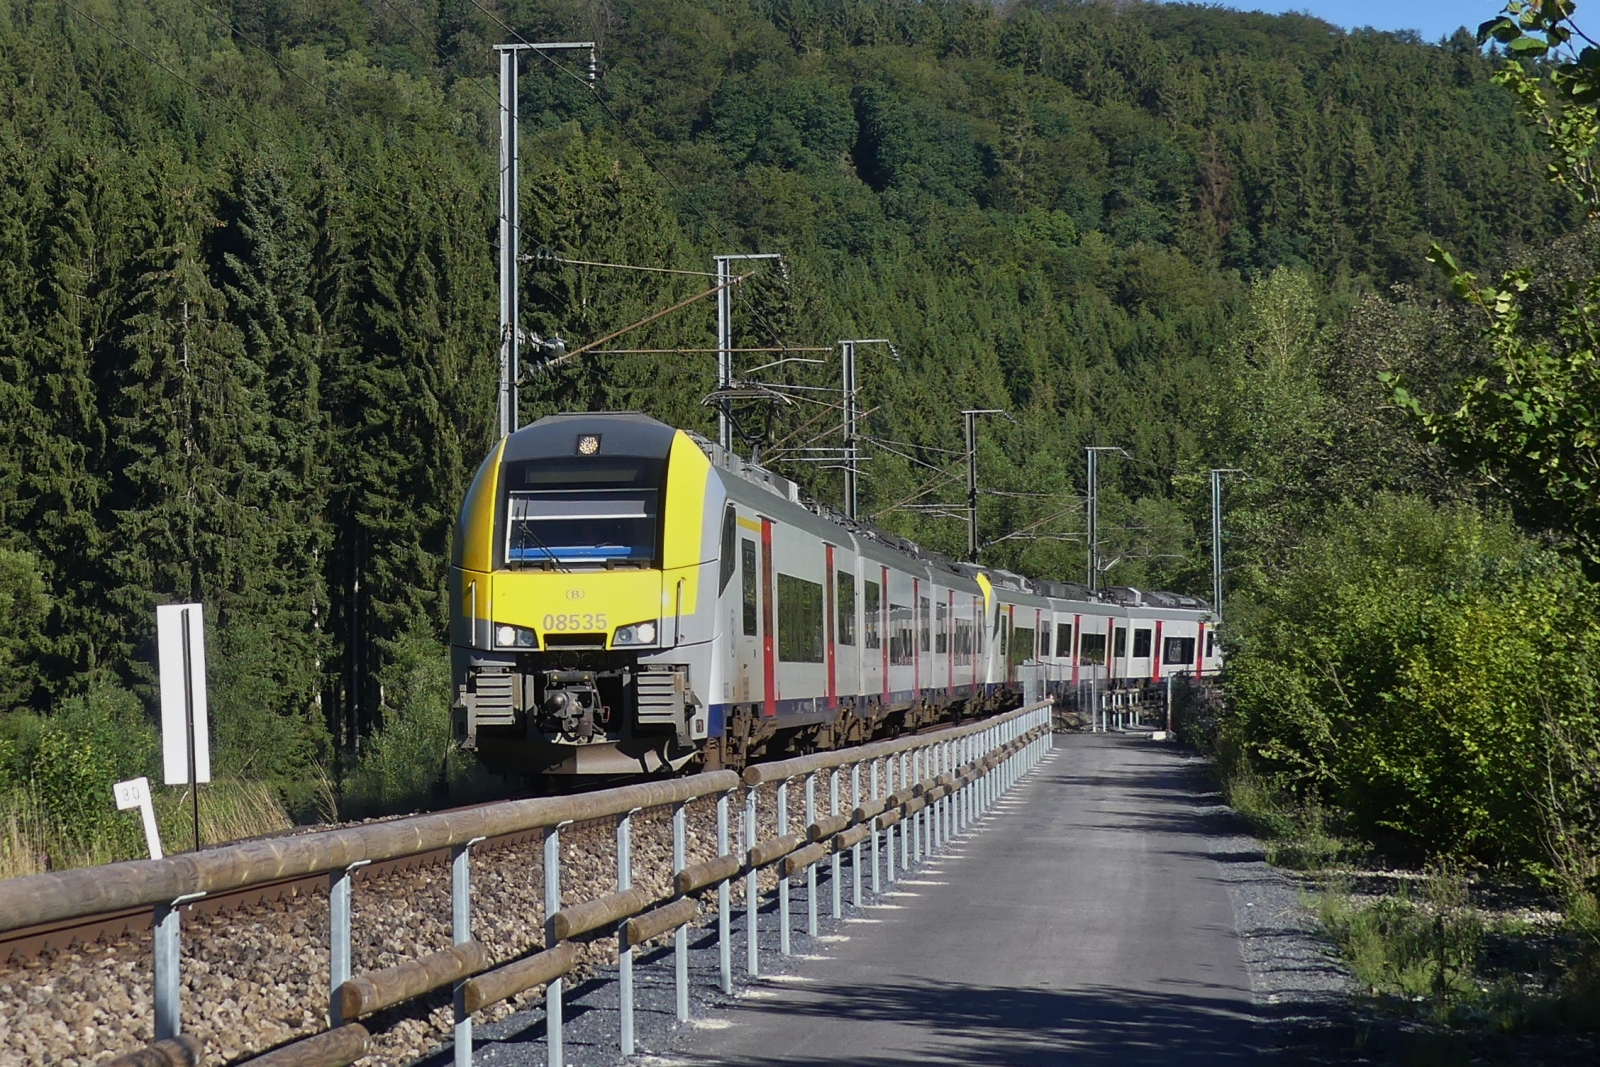 Beim Besuch des provisorisch eröffnetem Fahrrad- und Wanderweg, an der Bahn entlang zwischen Maulusmühle und Clervaux. Ist SNCB 08535 und 08537 von Lüttich in Richtung Luxemburg unterwegs. 10.08.2021

